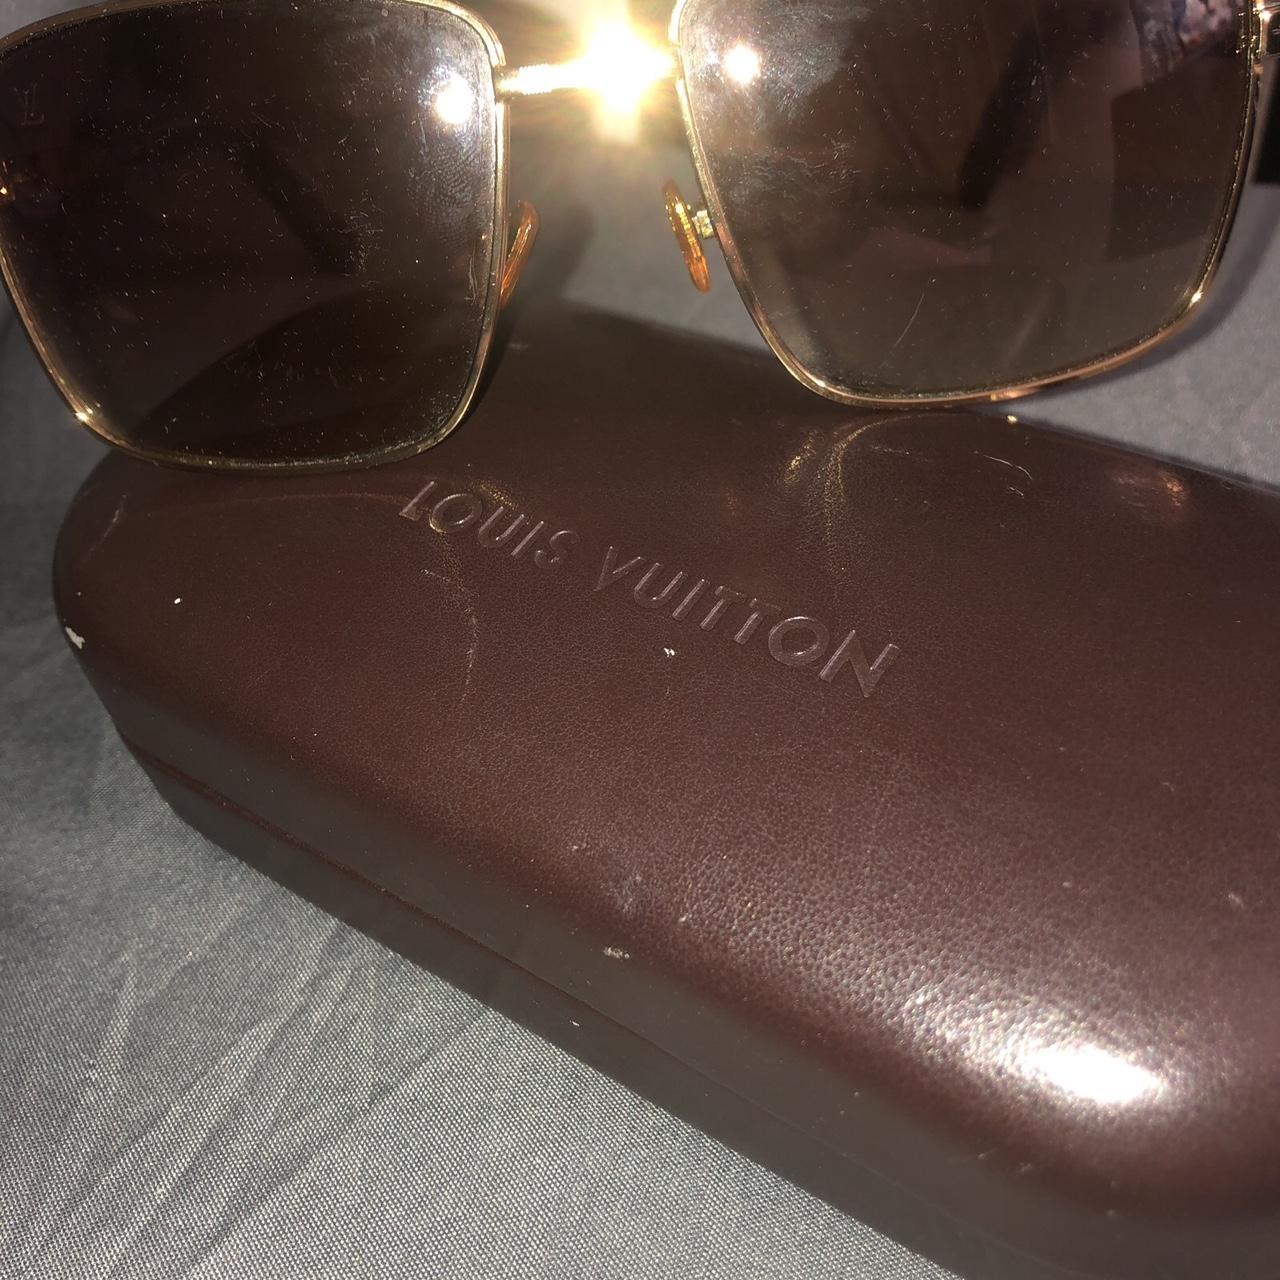 Louis+Vuitton+Attitude+Square+Sunglasses+%28Z0259U%29 for sale